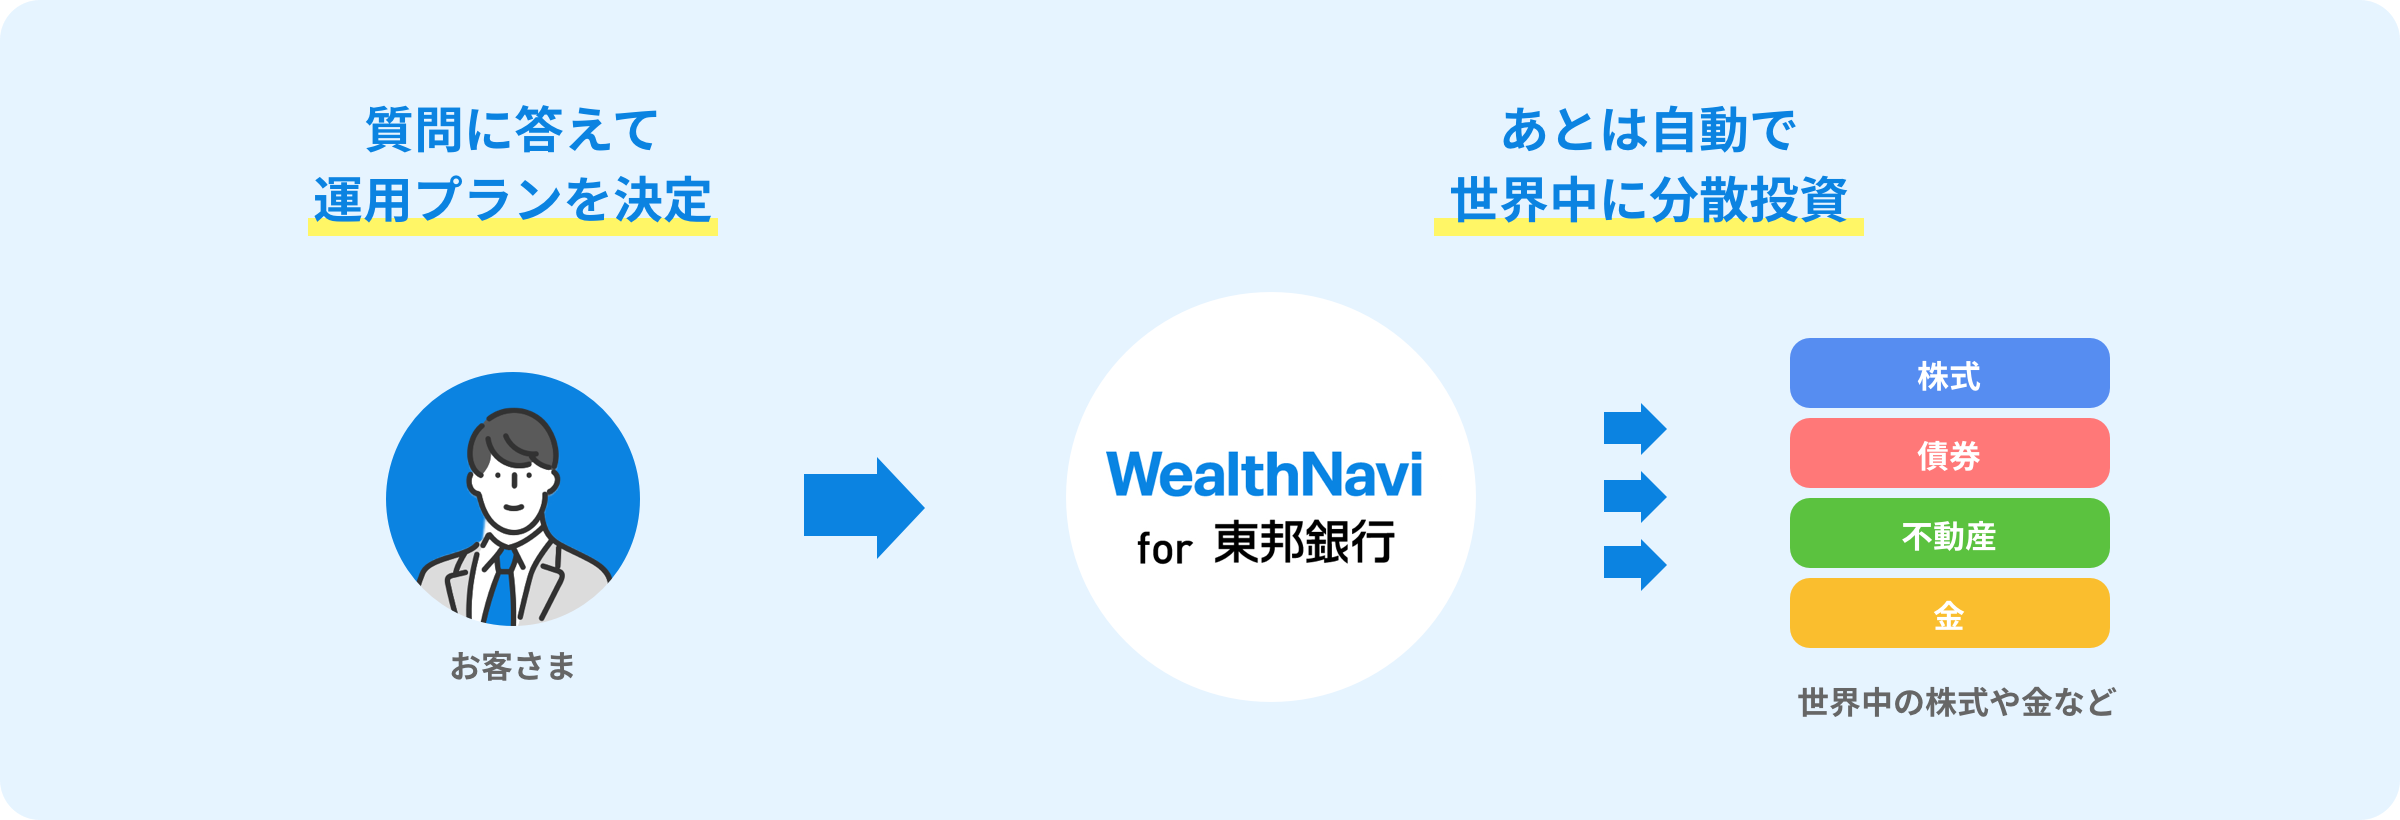 WealthNavi for 東邦銀行があなたの代わりにすべて自動で資産運用を行います